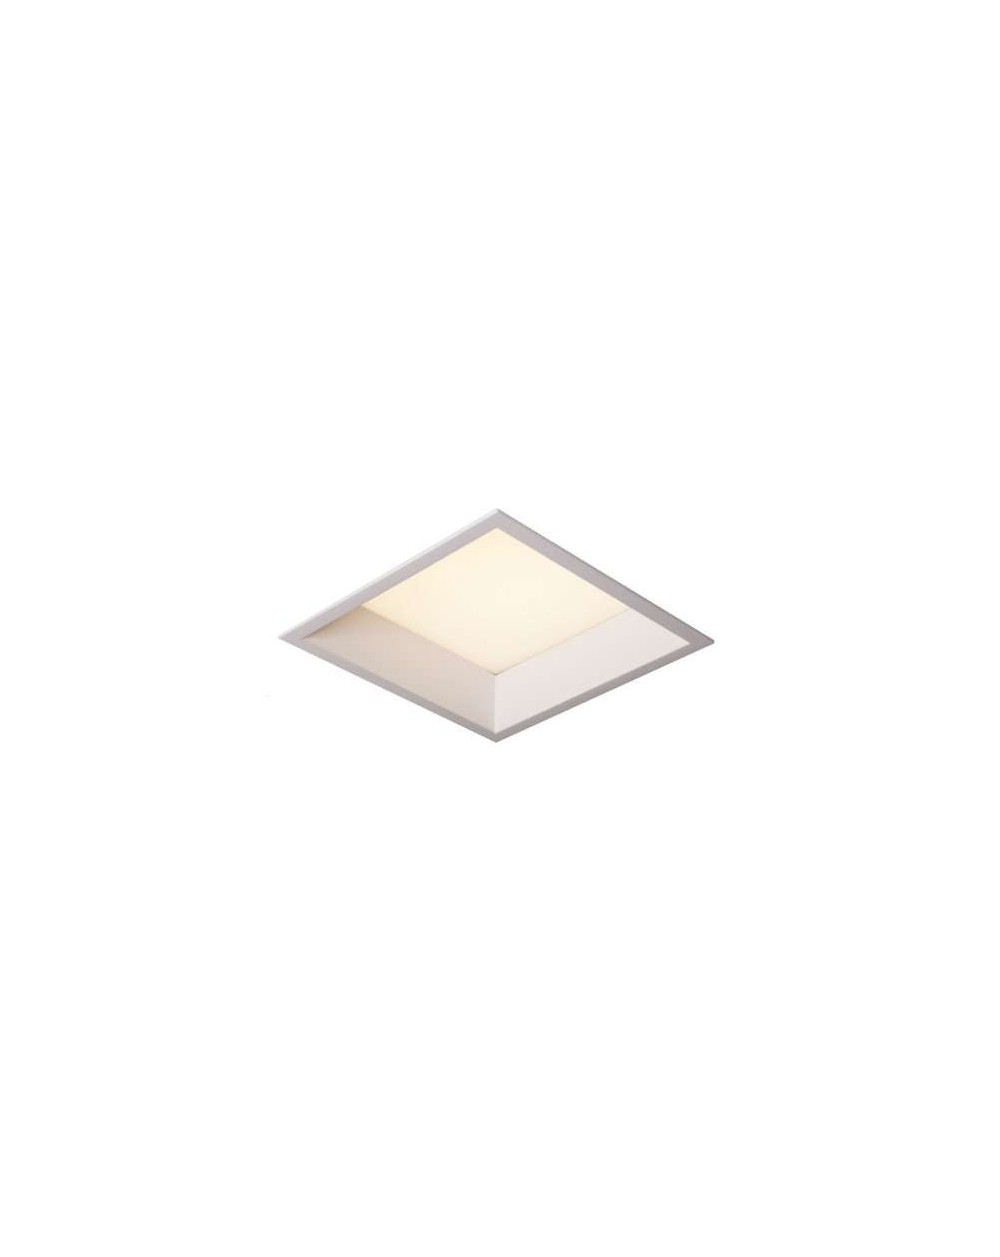 Lampa sufitowa SQUARE WP IP44 - Mistic Lighting oprawa wpuszczana kwadratowa typu downlight do zabudowy w sufitach biała